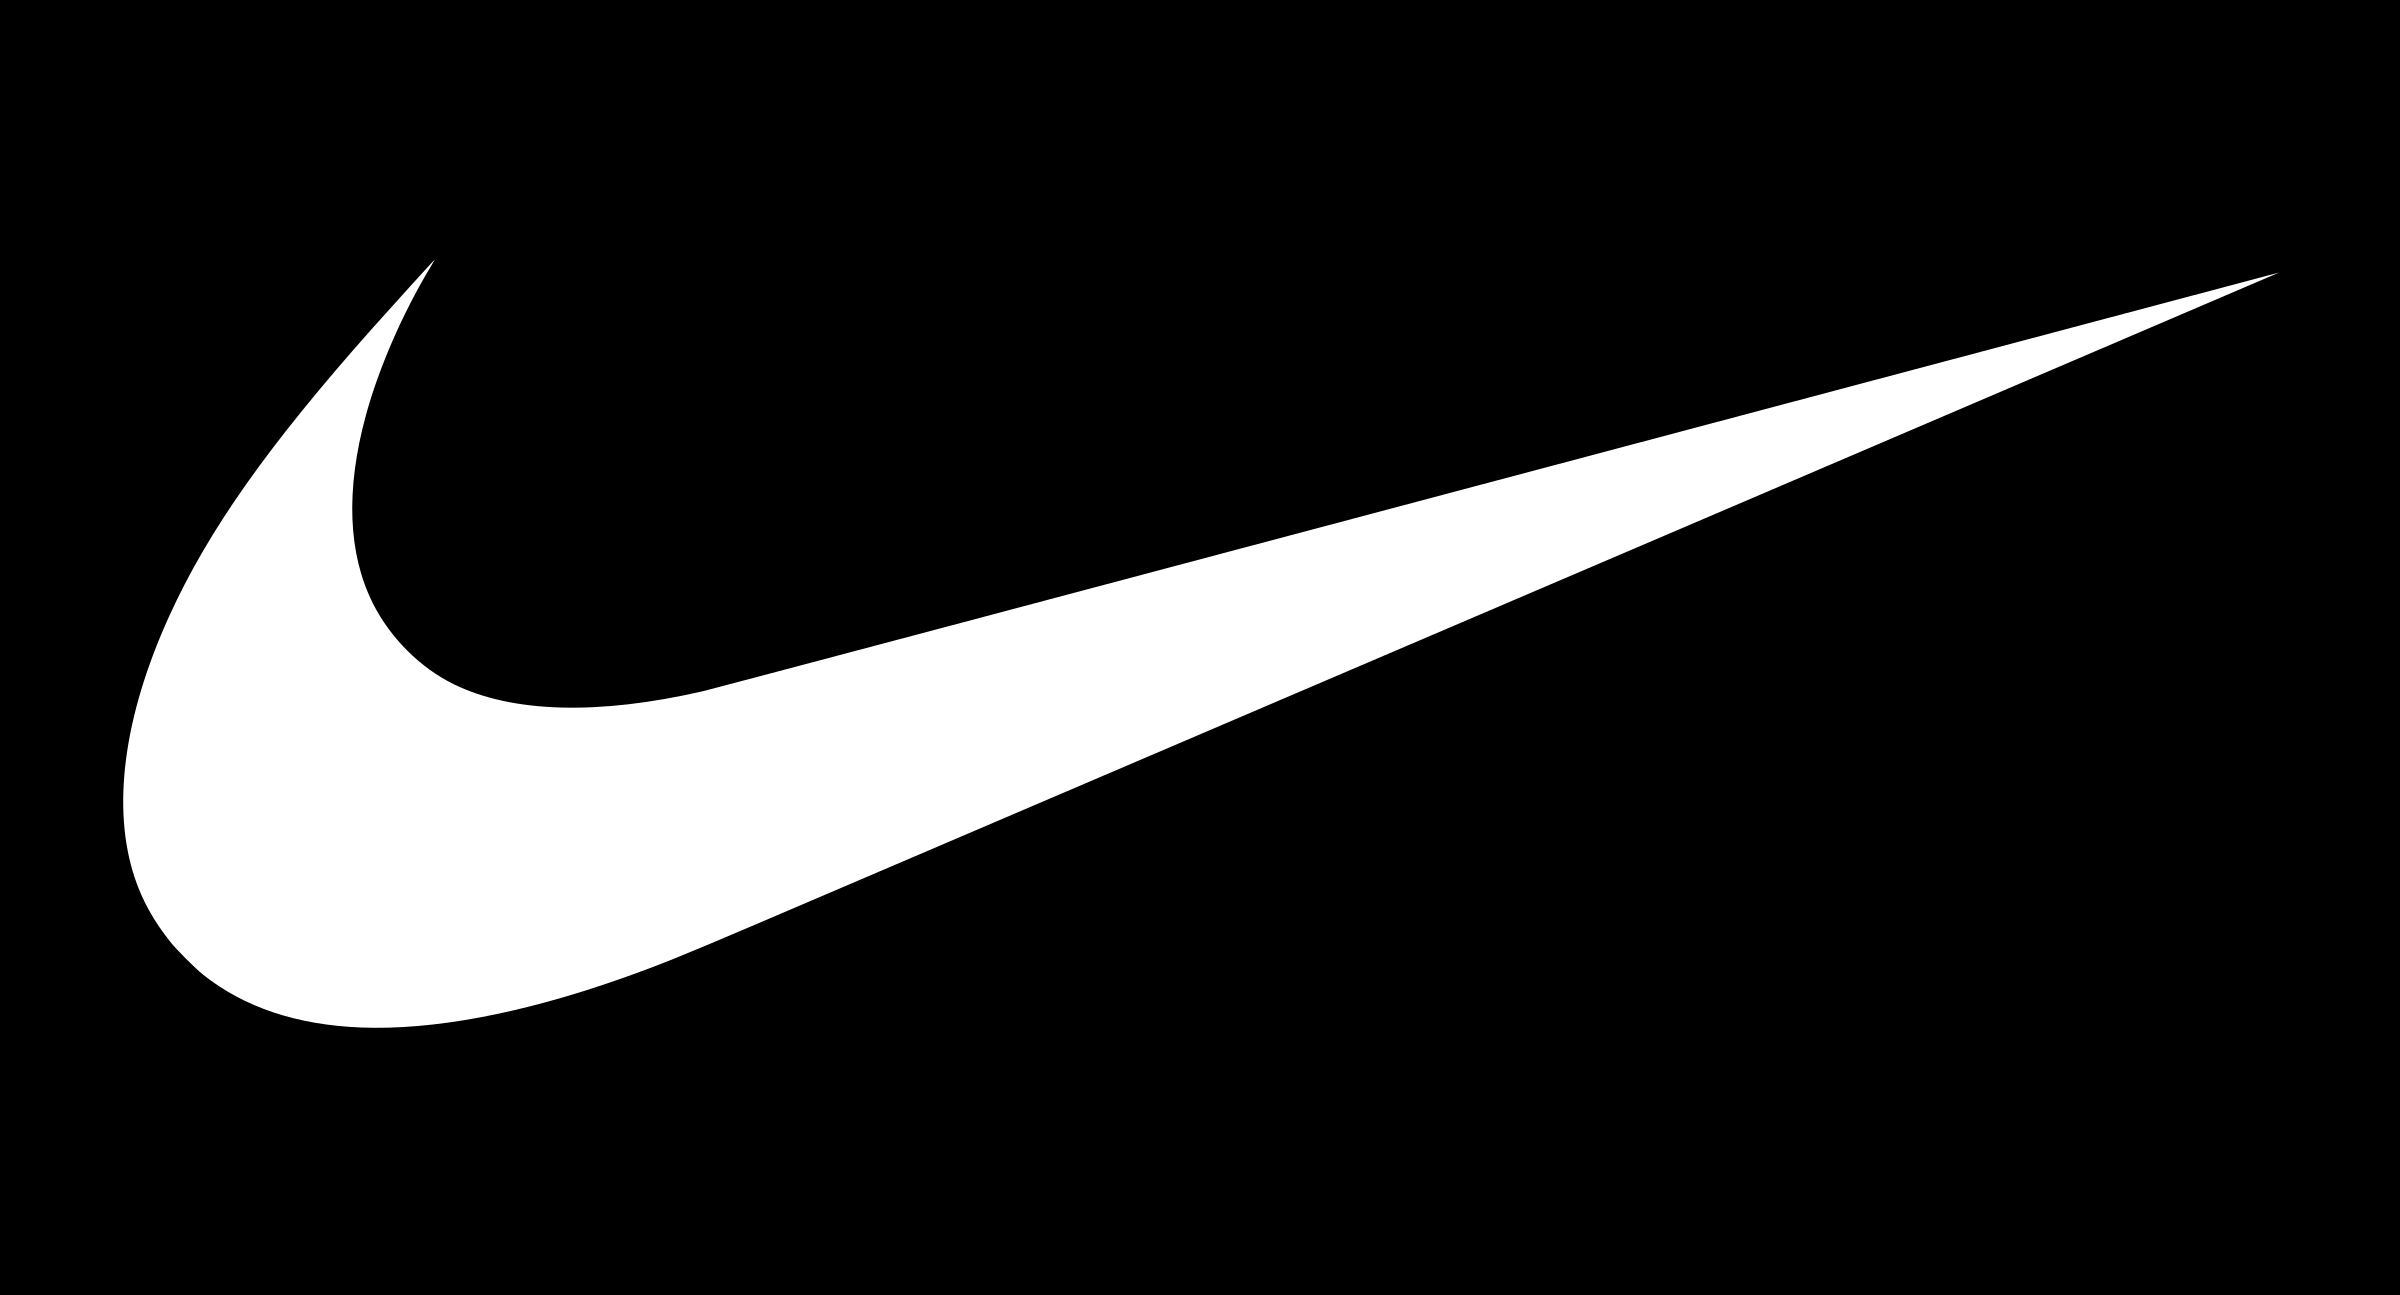 White Nike Logo Transparent Background: Nếu bạn đang tìm kiếm một trong những cách đơn giản nhất để thể hiện tình yêu với thương hiệu Nike, hãy cập nhật ngay hình ảnh logo Nike trắng trong suốt. Với nền trắng trong suốt, logo Nike sẽ trở nên tinh tế và thanh lịch hơn bao giờ hết. Hãy xem ảnh liên quan đến logo Nike trắng trong suốt để làm mới vẻ ngoài cho thiết bị của bạn.